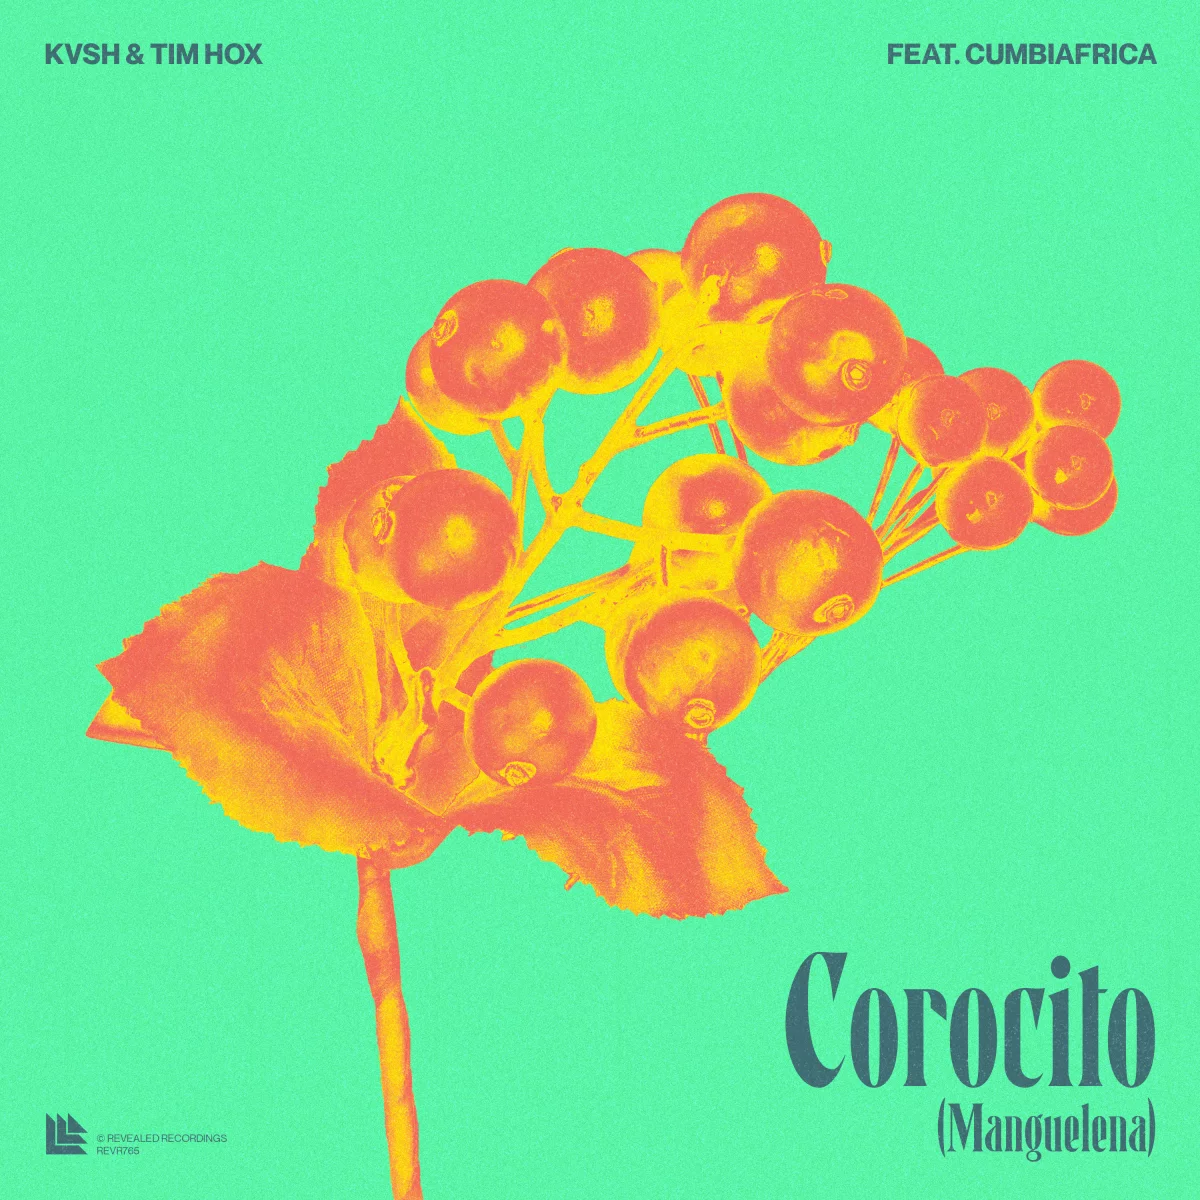 Corocito (Manguelena) - KVSH⁠ & Tim Hox⁠ feat. Cumbiafrica⁠ 